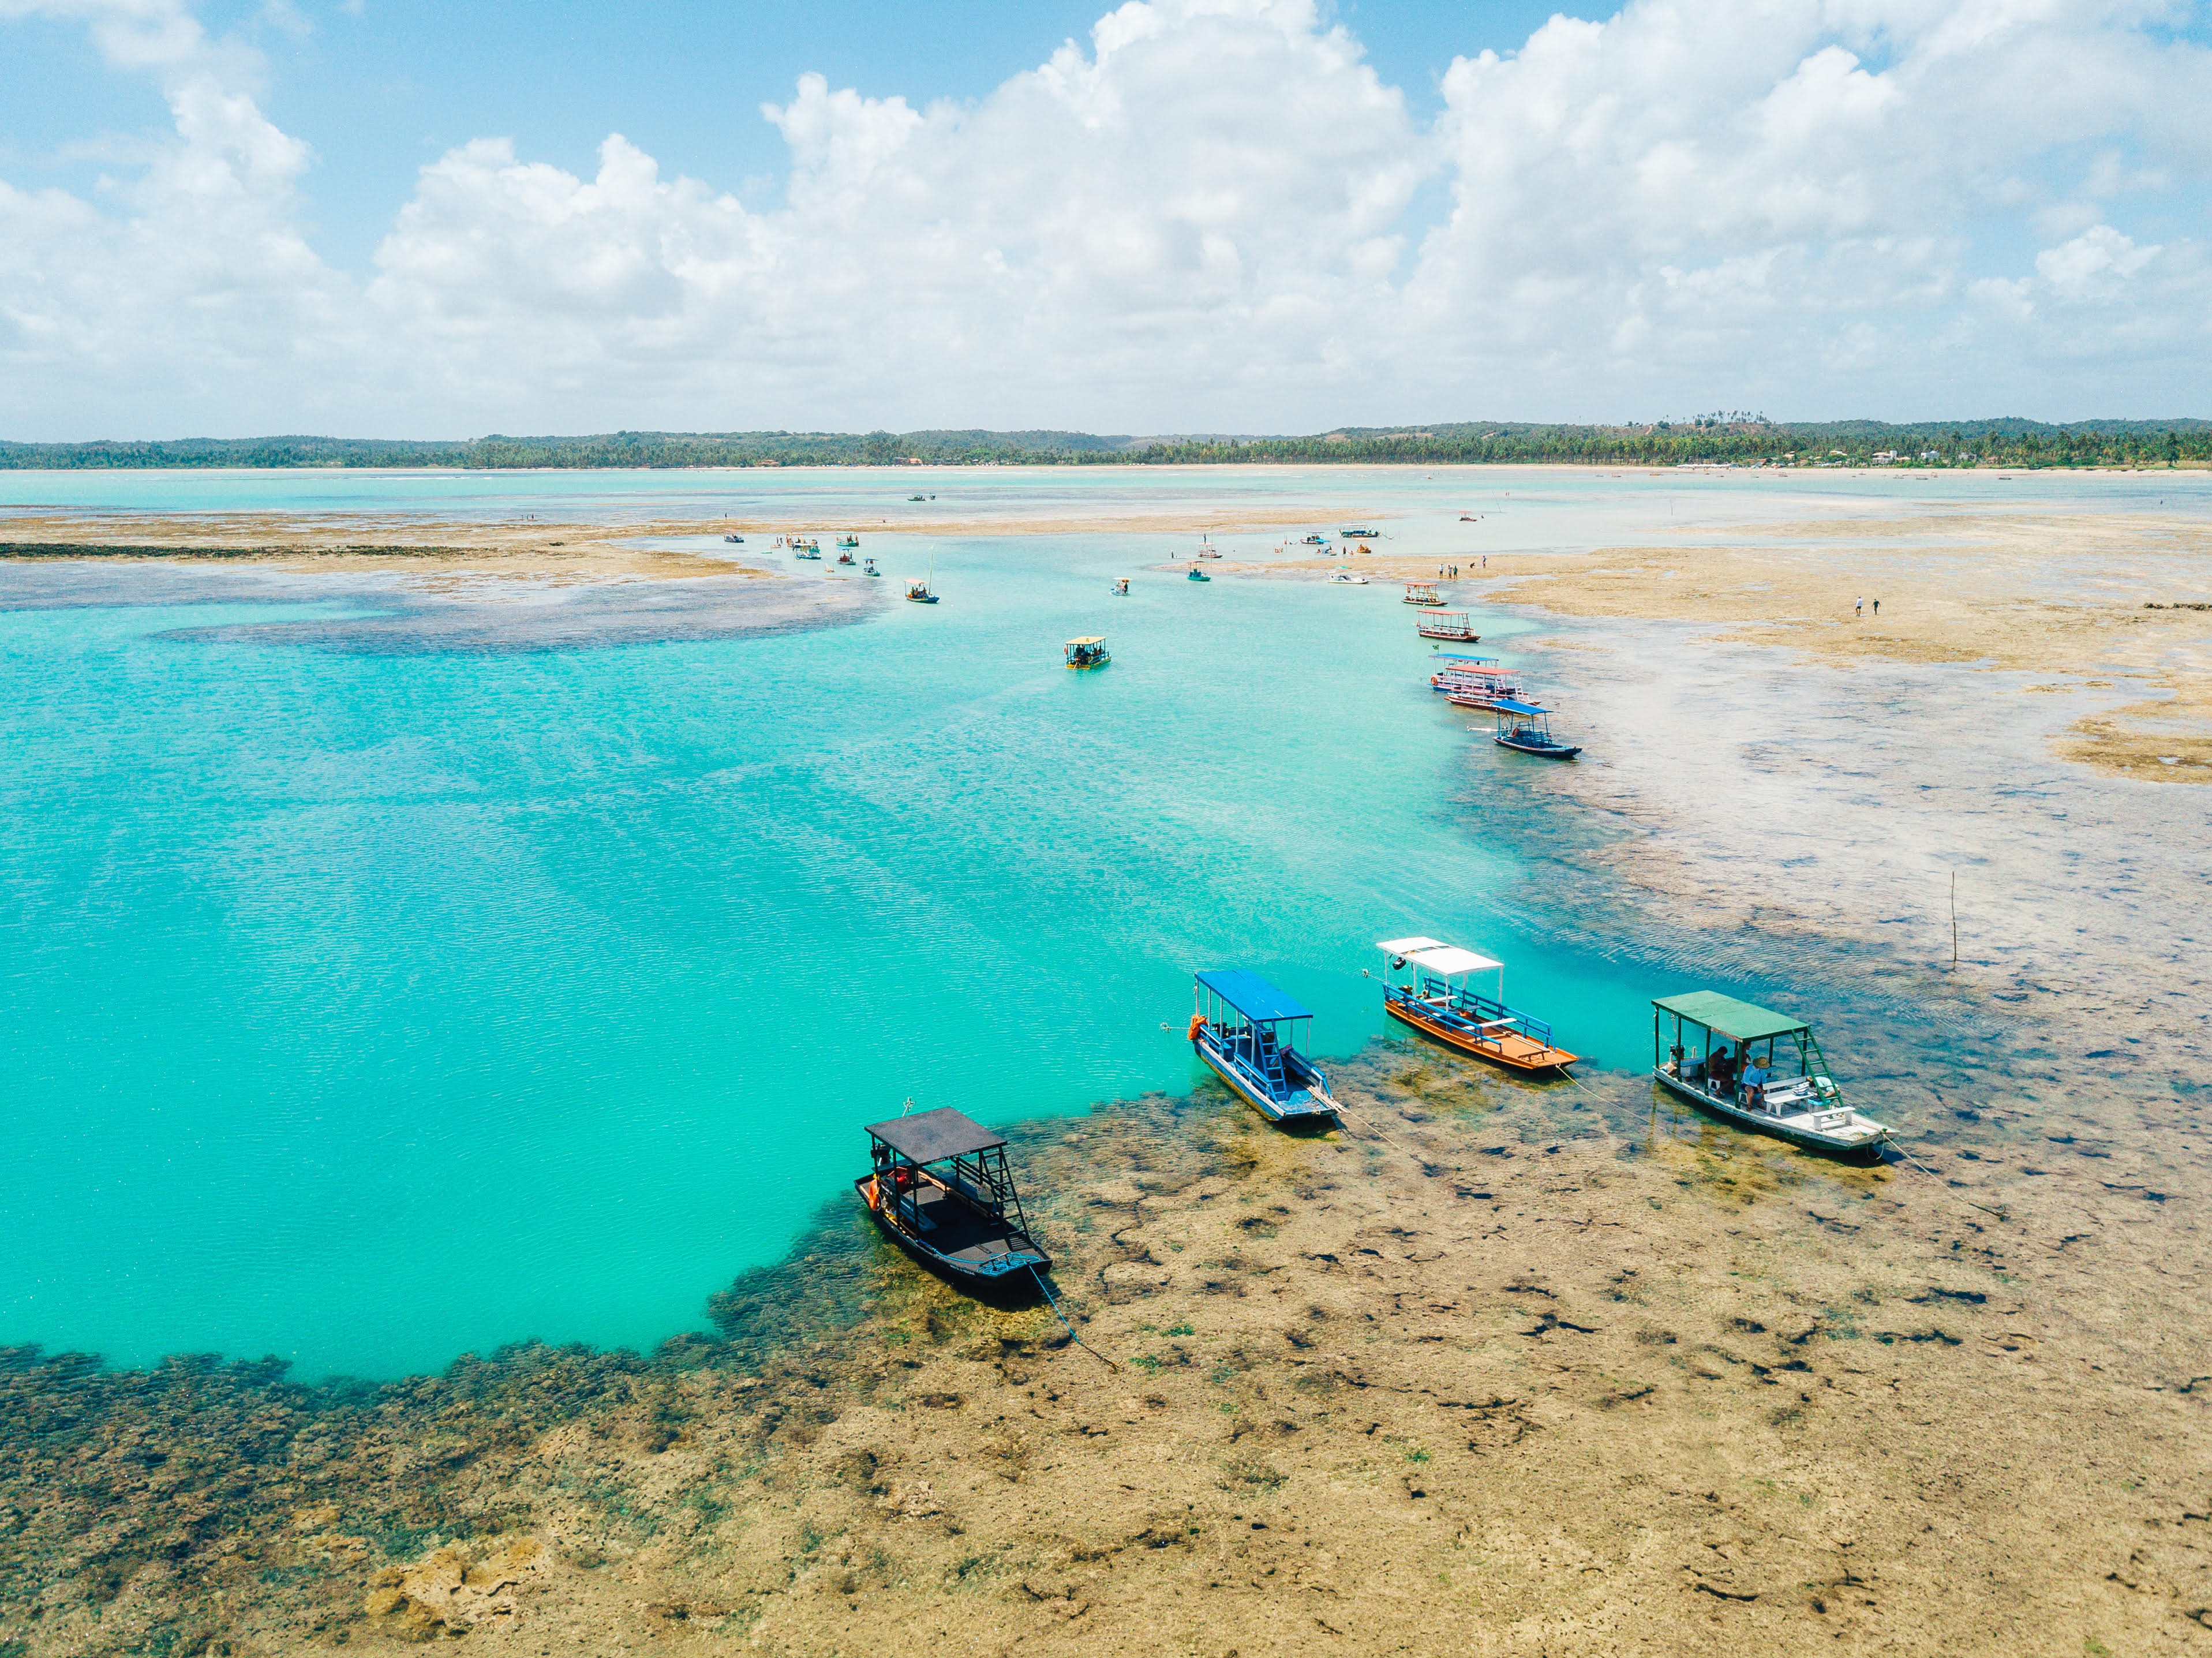 Veja as praias brasileiras premiadas por qualidade ambiental e segurança em lista internacional